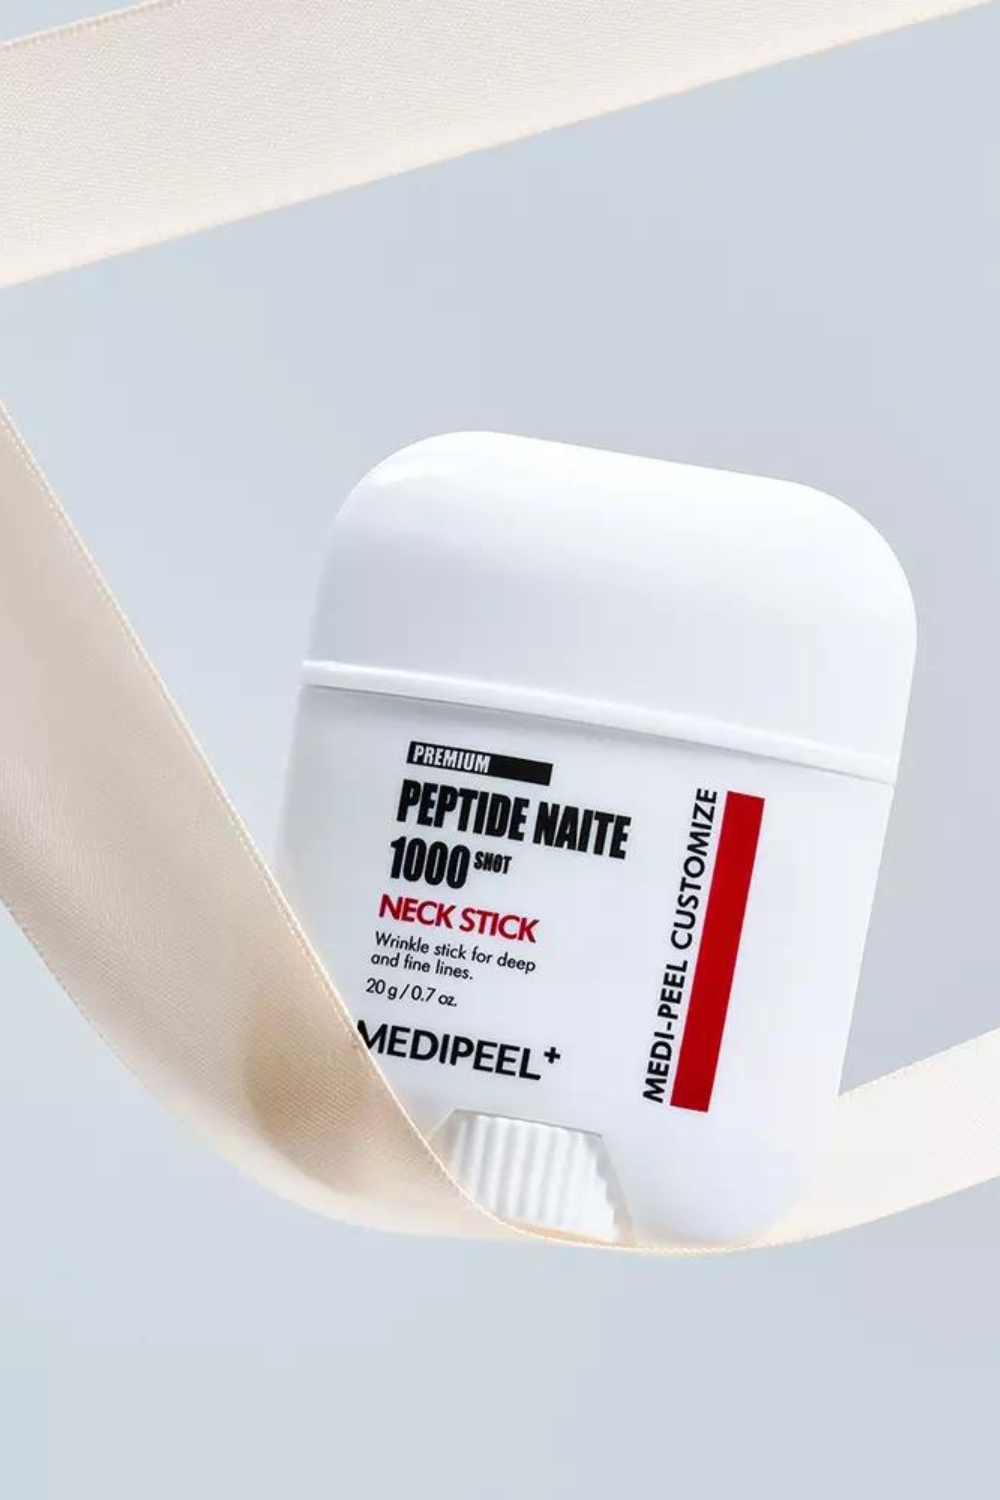 Premium Peptide Naite 1000 Shot Neck Stick 19g MEDI-PEEL